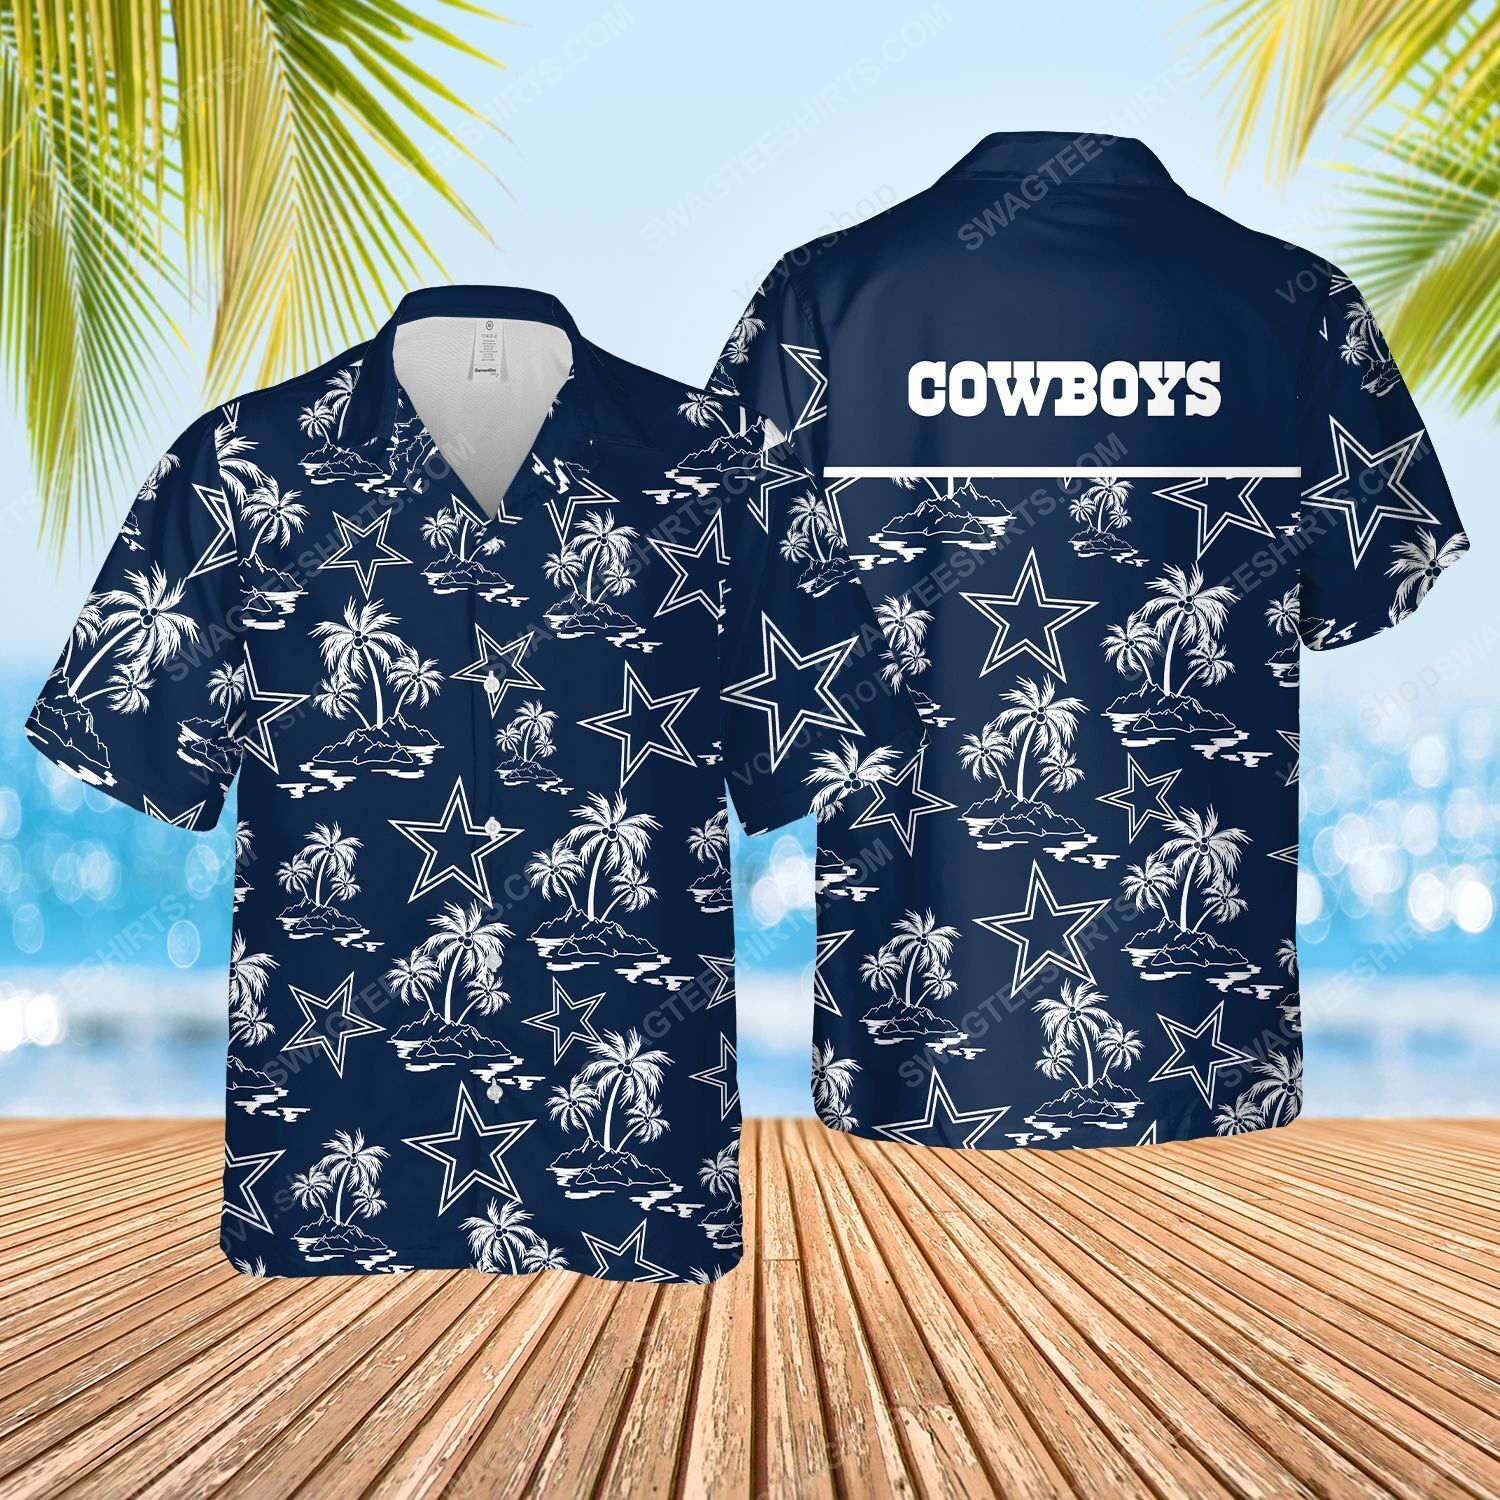 The dallas cowboys full printed hawaiian shirt